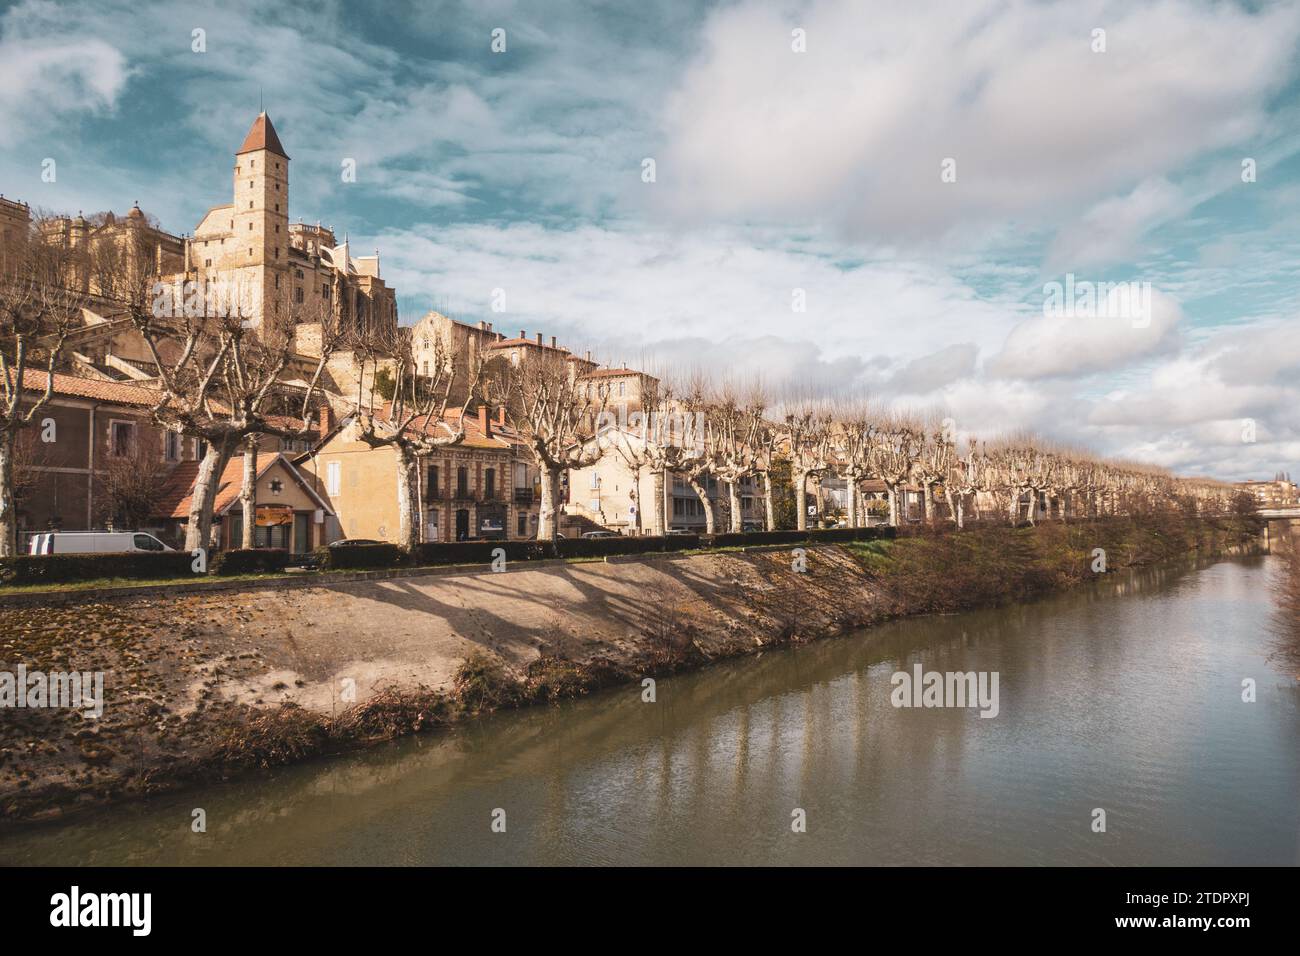 Vue sur la ville d'Auch sur le fleuve Gers. Cathédrale et tour d'Armagnac. Photographie prise en France Banque D'Images